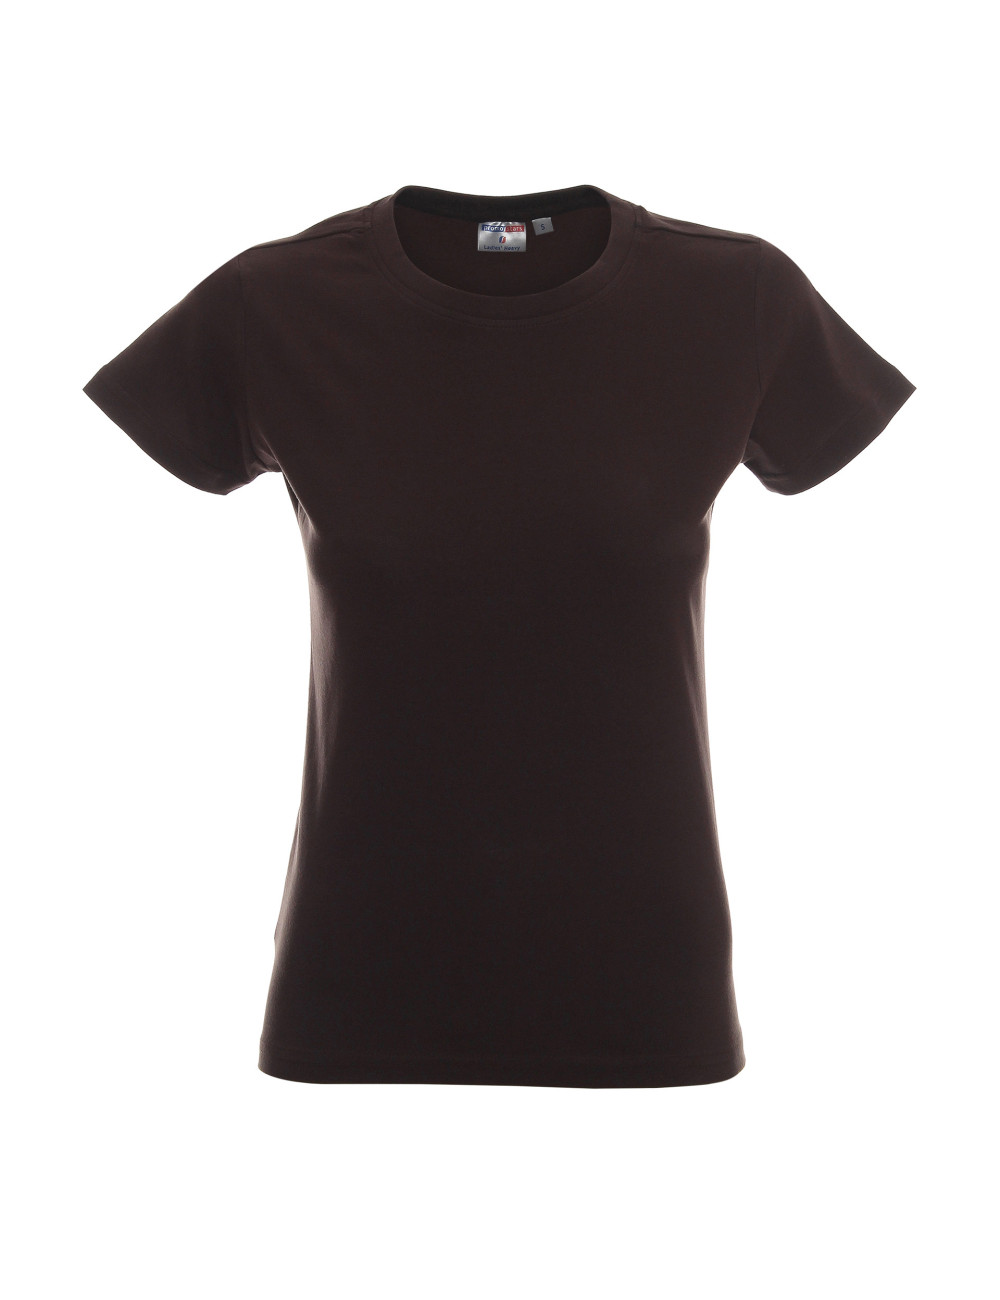 Schweres Damen-T-Shirt dunkelbraun von Promostars